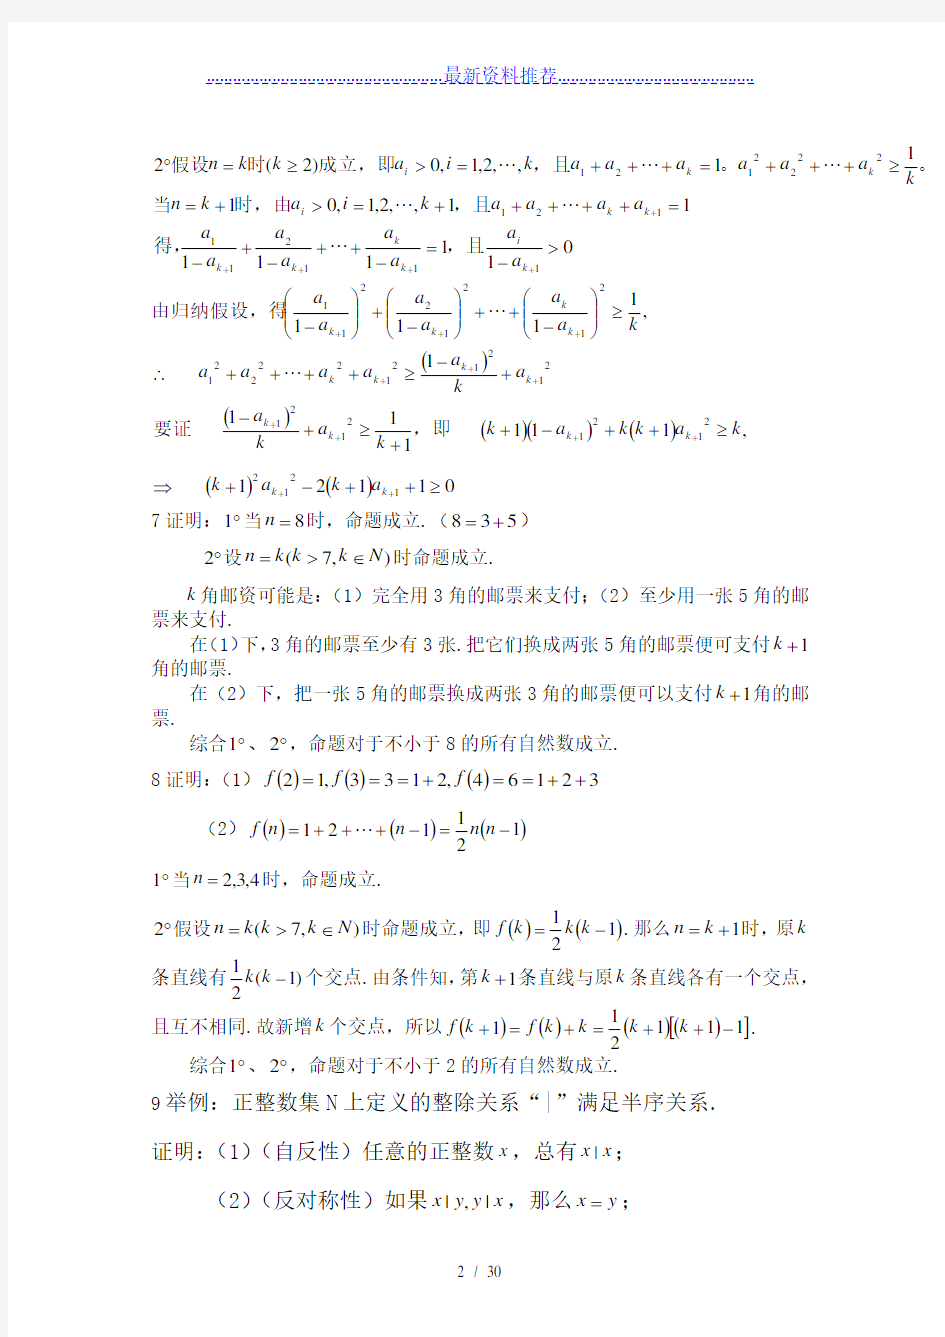 初等数学研究(程晓亮、刘影)版课后习题答案